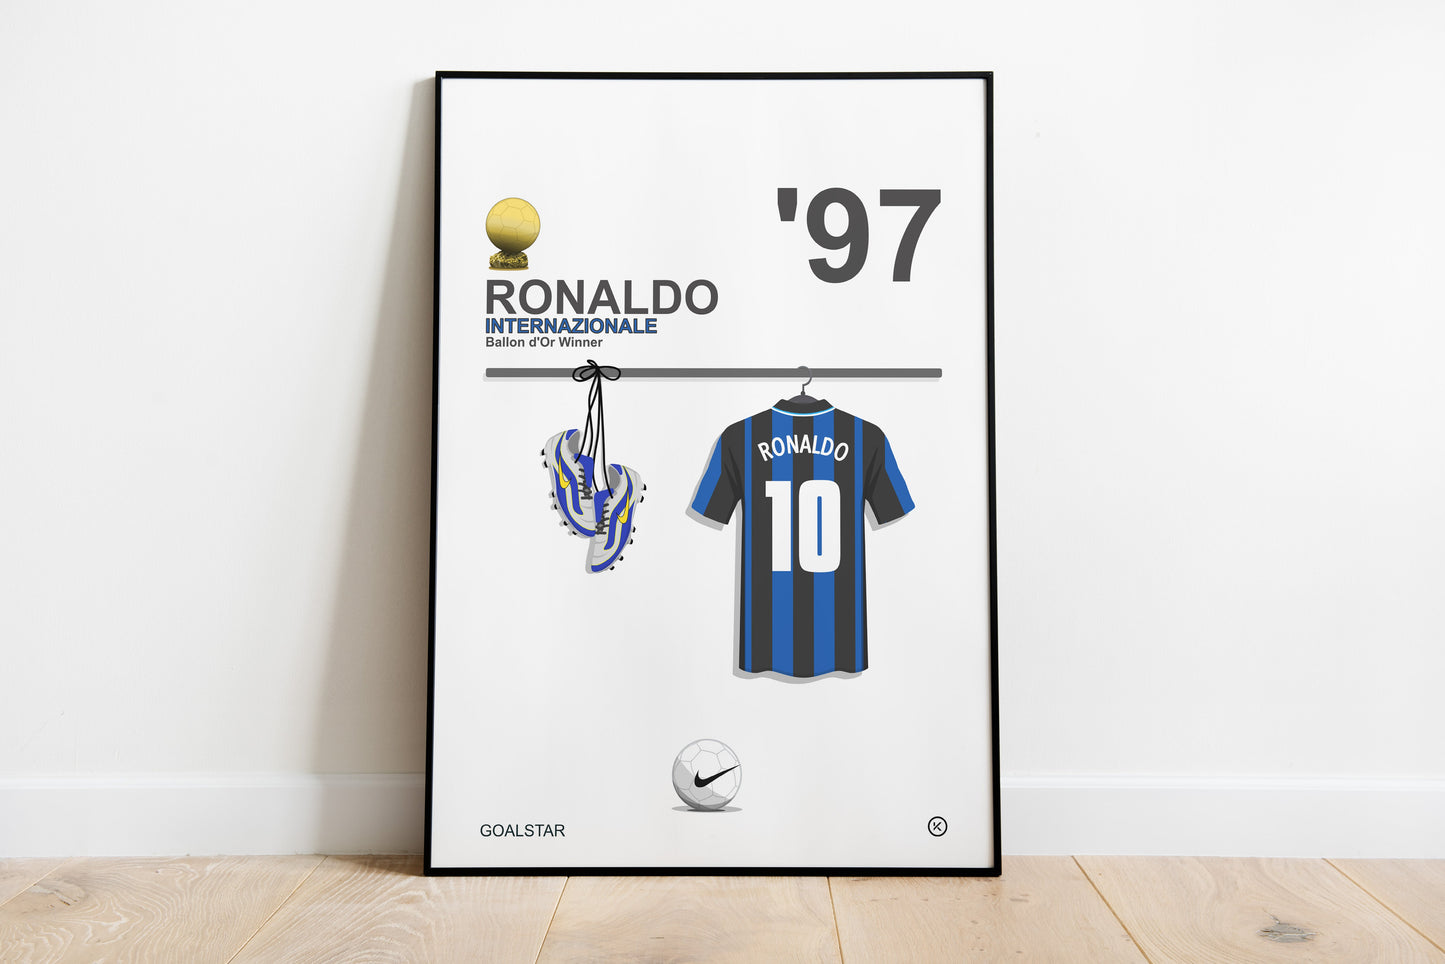 Ronaldo - Ballon d'Or Winner 1997